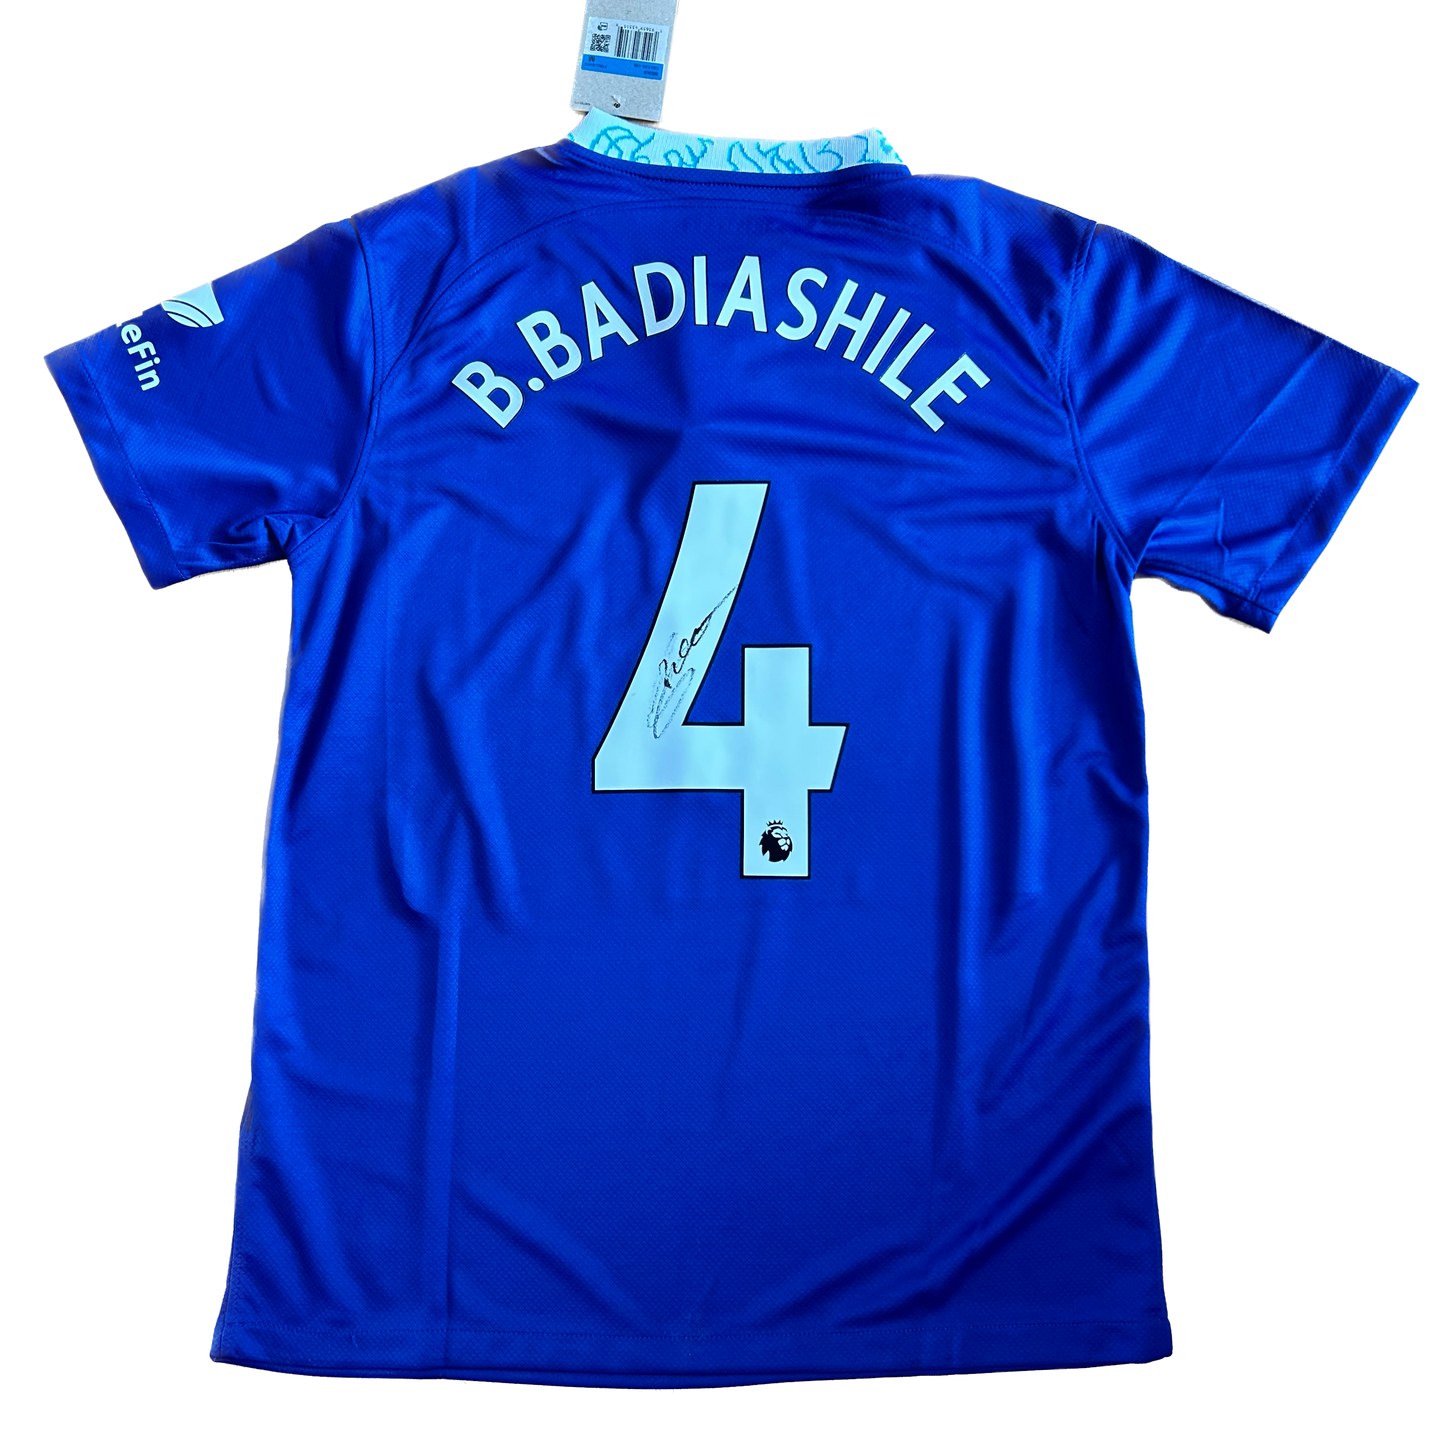 Signed Badiashile Chelsea Home Shirt 22/23